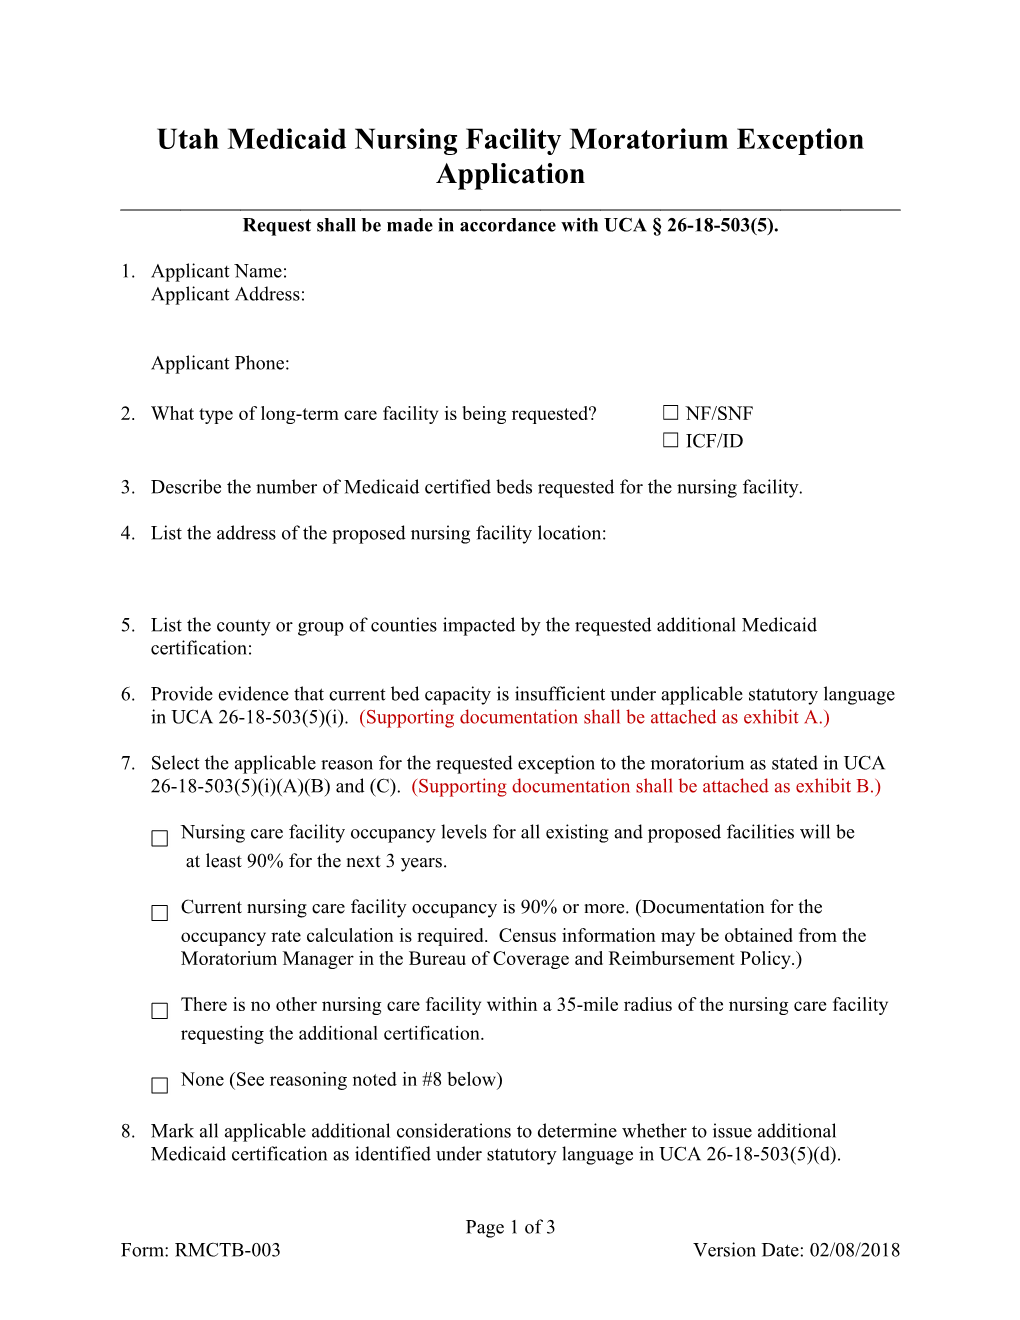 Utah Medicaid Nursing Facility Moratorium Exception Application